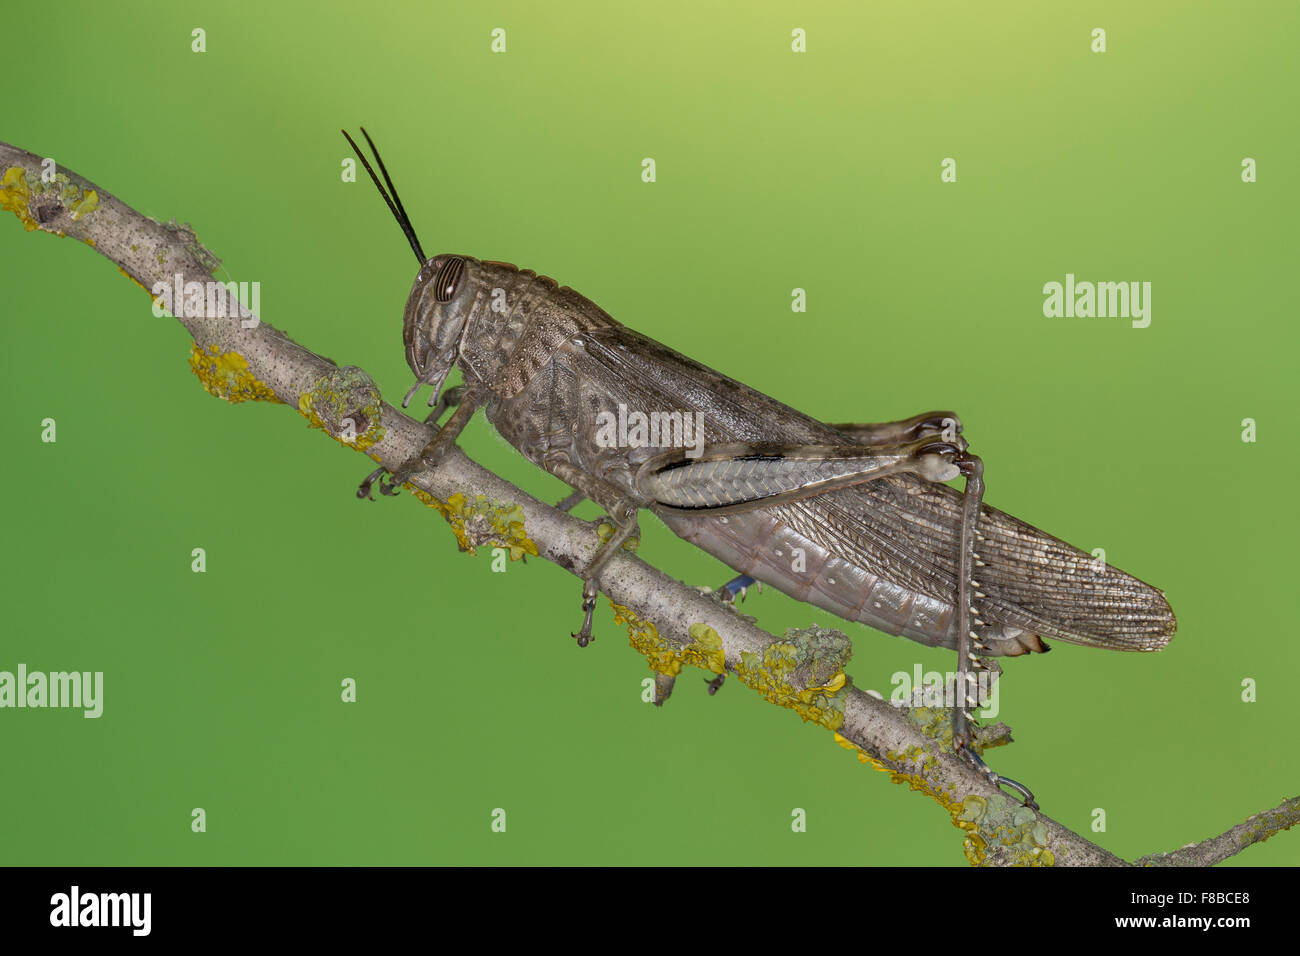 Egyptian Locust, Egyptian grasshopper, Ägyptische Wanderheuschrecke, Ägyptische Heuschrecke, Anacridium aegyptium Stock Photo